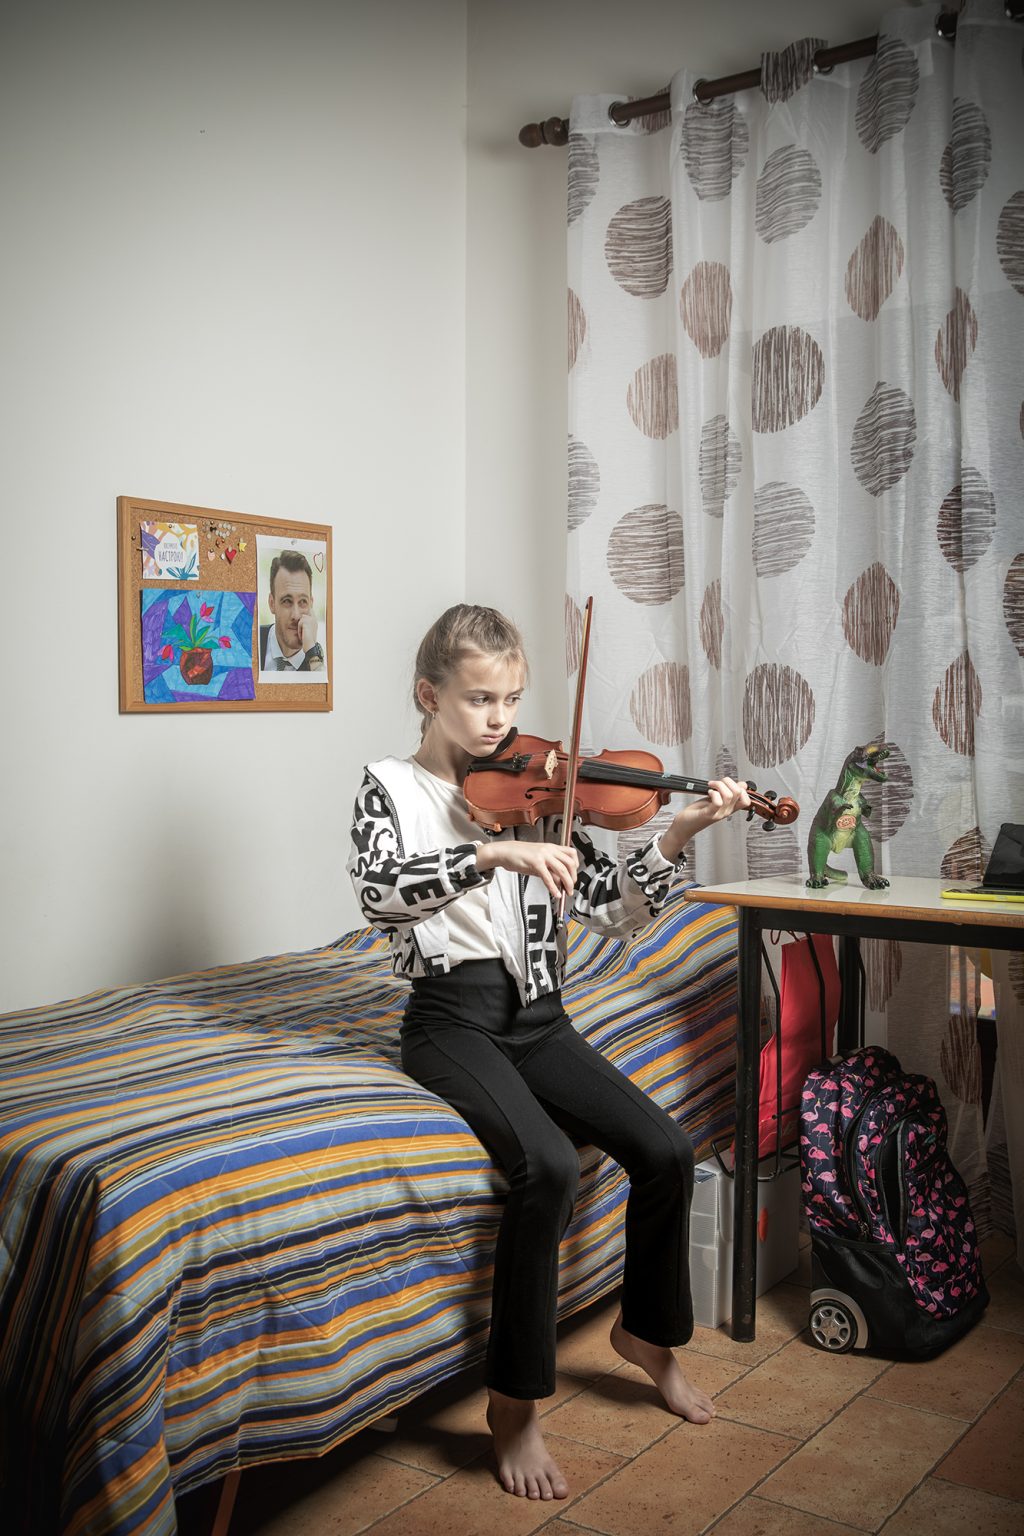 Sacrofano (Roma), 22 ottobre 2022. Slaviana Plakhotina (11 anni) studia per l’esame di violino che ha sostenuto on line con la sua scuola di musica di Odessa. Slaviana alloggia insieme alla sua famiglia in una casa messa loro a disposizione dalla parrocchia di Sacrofano, in provincia di Roma. La famiglia Plakhotina è composta da Yevgen (38), Oleksandra (34) e i figli Denys (14 anni, adottato all’età di 10 anni), Slaviana (11) e Savilii (3), nella .
La famiglia, originaria di Mariupol, viveva ad Odessa dal 2019. Yevgen (che in quanto padre di 3 figli è esonerato dalla legge marziale) lavora come marinaio per una compagnia marittima ucraina, mentre Oleksandra, dopo i suoi studi da giornalista, ha lavorato come corrispondente per una emittente di Mariupol e per un magazine ad Odessa. Ora si occupa a tempo pieno della casa e dei figli e scrive poesie. 
Il 24 febbraio, all’inizio dell’invasione russa, Yevgen si trovava a bordo di un cargo al largo di Rotterdam, sulle rotta Olanda, Finlandia e Russia. Il suo telefono non prendeva il segnale, e lui è stato informato dell’inizio della guerra dal secondo ingegnere di bordo, che avendo una sim olandese, riusciva a connettersi. Yevgen ricorda di aver pensato inizialmente ad uno scherzo, ma poi quando si è connesso tramite l’hotspot del collega, il suo telefono è stato subissato di messaggi. Il primo pensiero è stato ovviamente alla famiglia che però non è riuscito a contattare. Una volta in porto il suo telefono era regolarmente in funzione ed è riuscito a mettersi in contatto con Oleksandra, che nel frattempo si trovava insieme ai tre figli al sicuro in un bunker ad Odessa. Insieme hanno deciso che fosse più sicuro, per Oleksandra e i figli, lasciare Odessa. Oleksandra si aggrega ad altre due famiglie e con tre macchine si dirigono verso il confine con la Moldavia. Per arrivare al confine, distante neanche 100 km, hanno impiegato 18 ore, dormendo in auto. Nella sua Oleksandra, aveva spento anche il risc